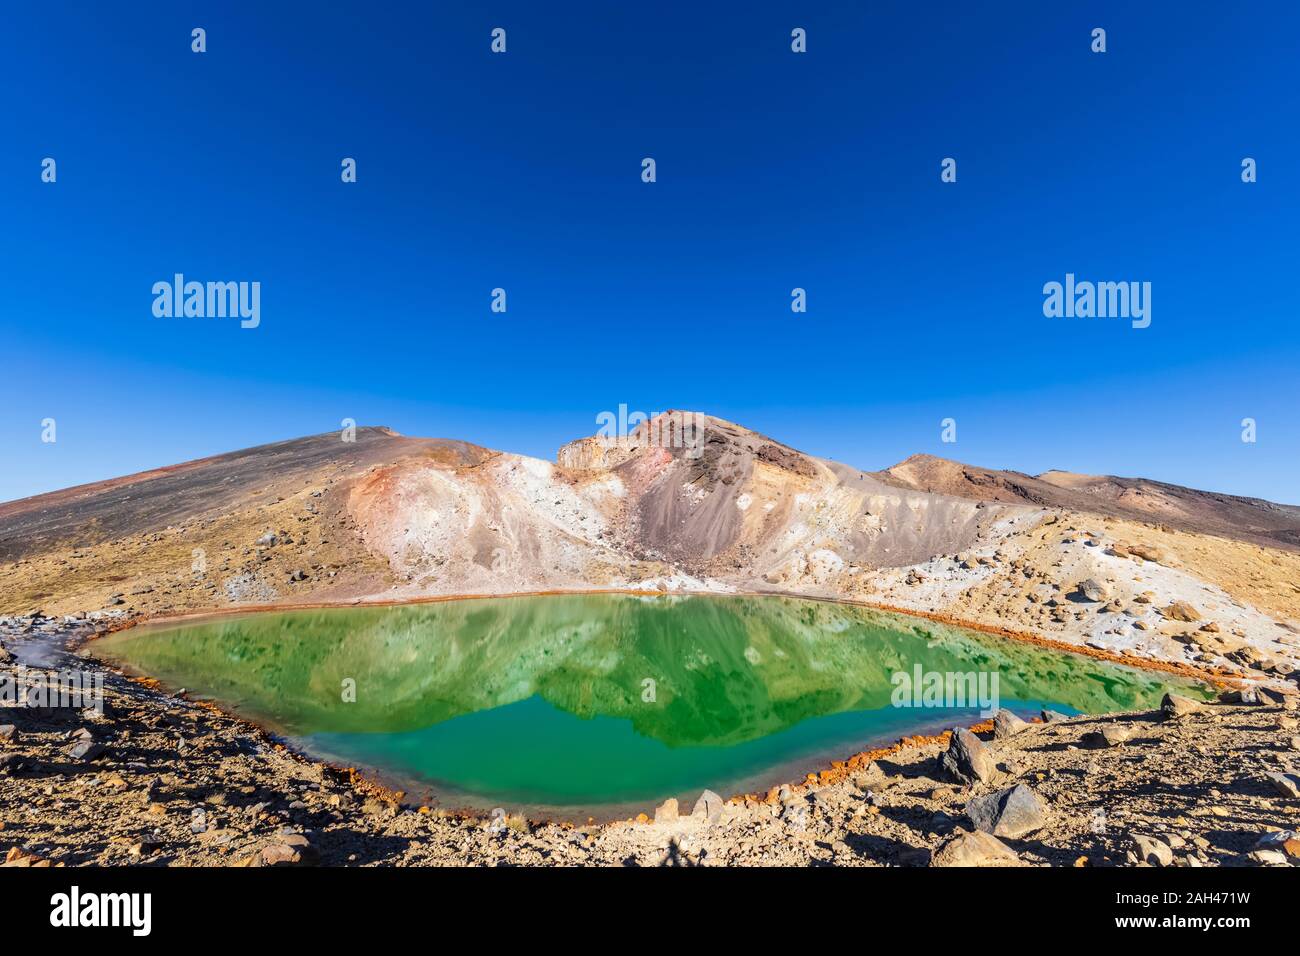 Nuova Zelanda, Isola del nord, cielo blu chiaro su laghi smeraldo nell Isola del nord altopiano vulcanico Foto Stock